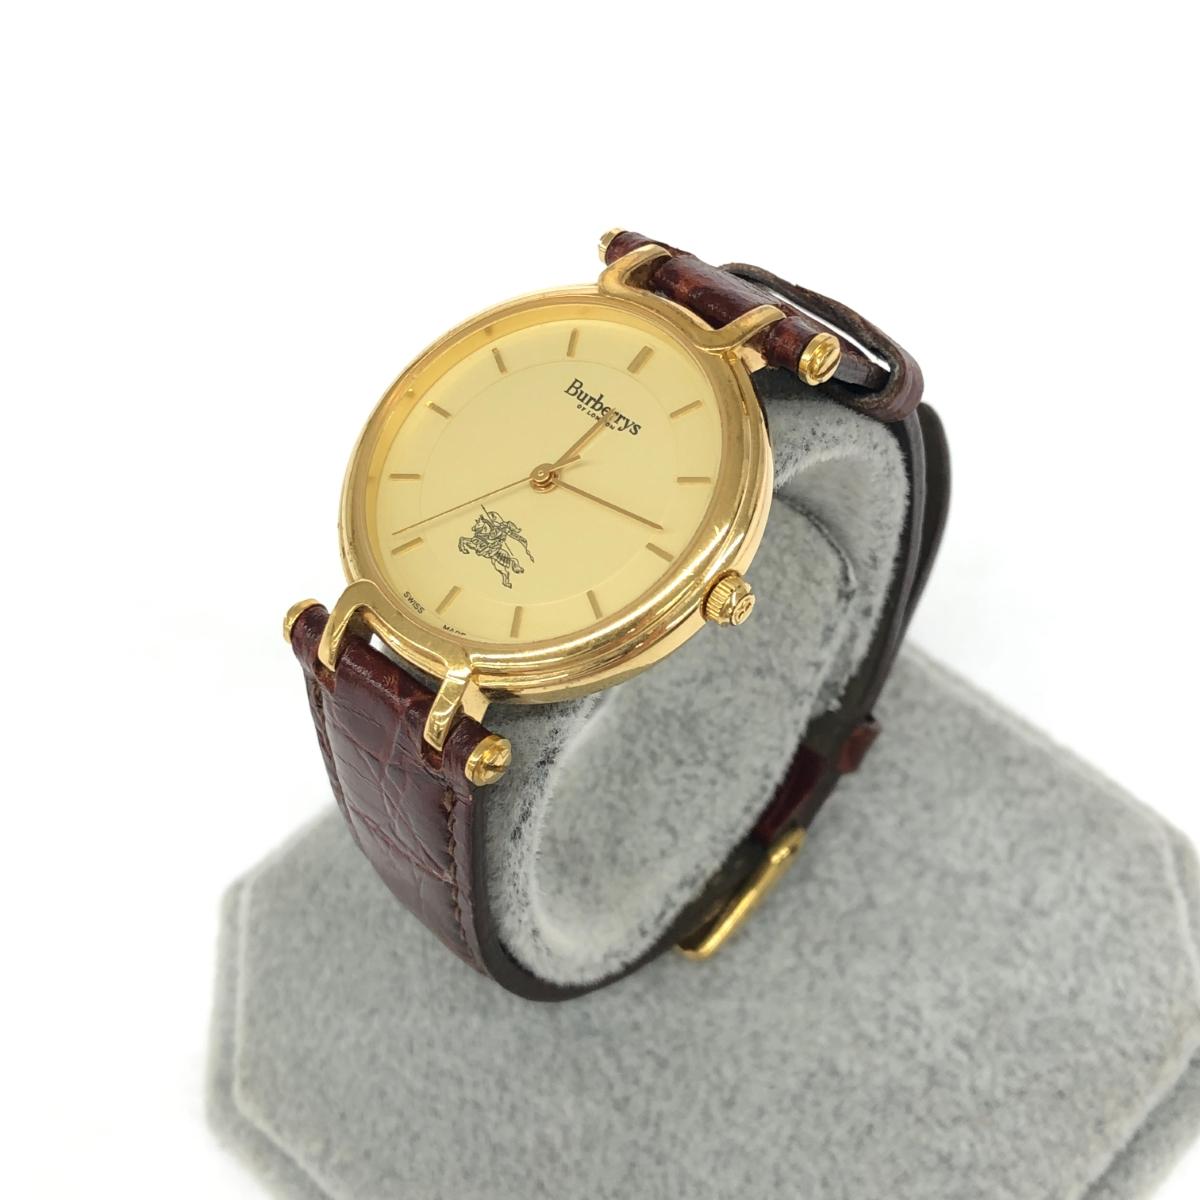 Burberry 039 s バーバリーズ ヴィンテージ 腕時計 クォーツ 3200 ゴールドカラー/ブラウン SS×レザー レディース ウォッチ watch 【中古】